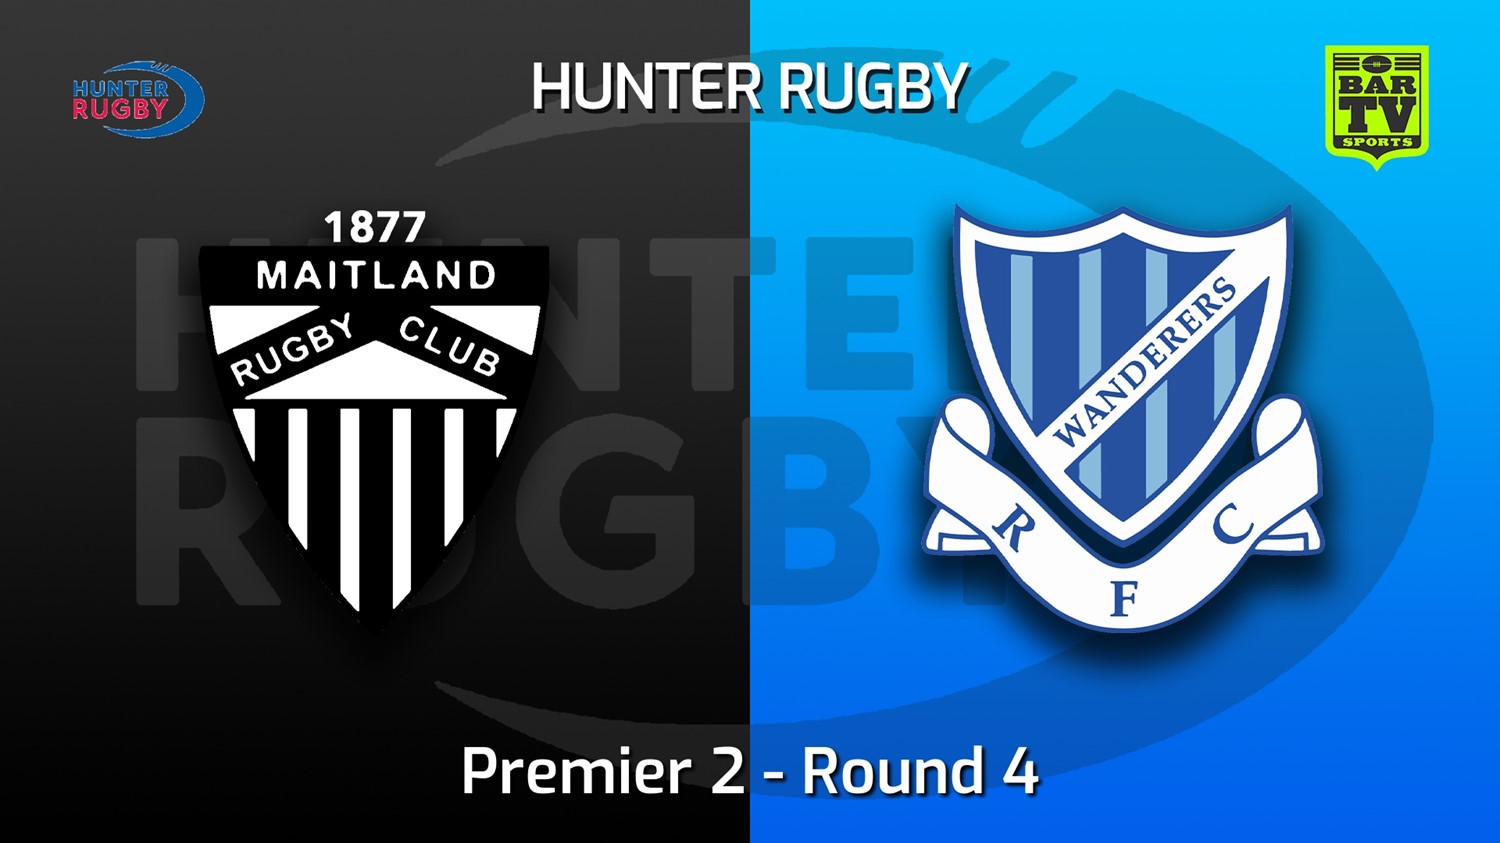 220514-Hunter Rugby Round 4 - Premier 2 - Maitland v Wanderers Slate Image